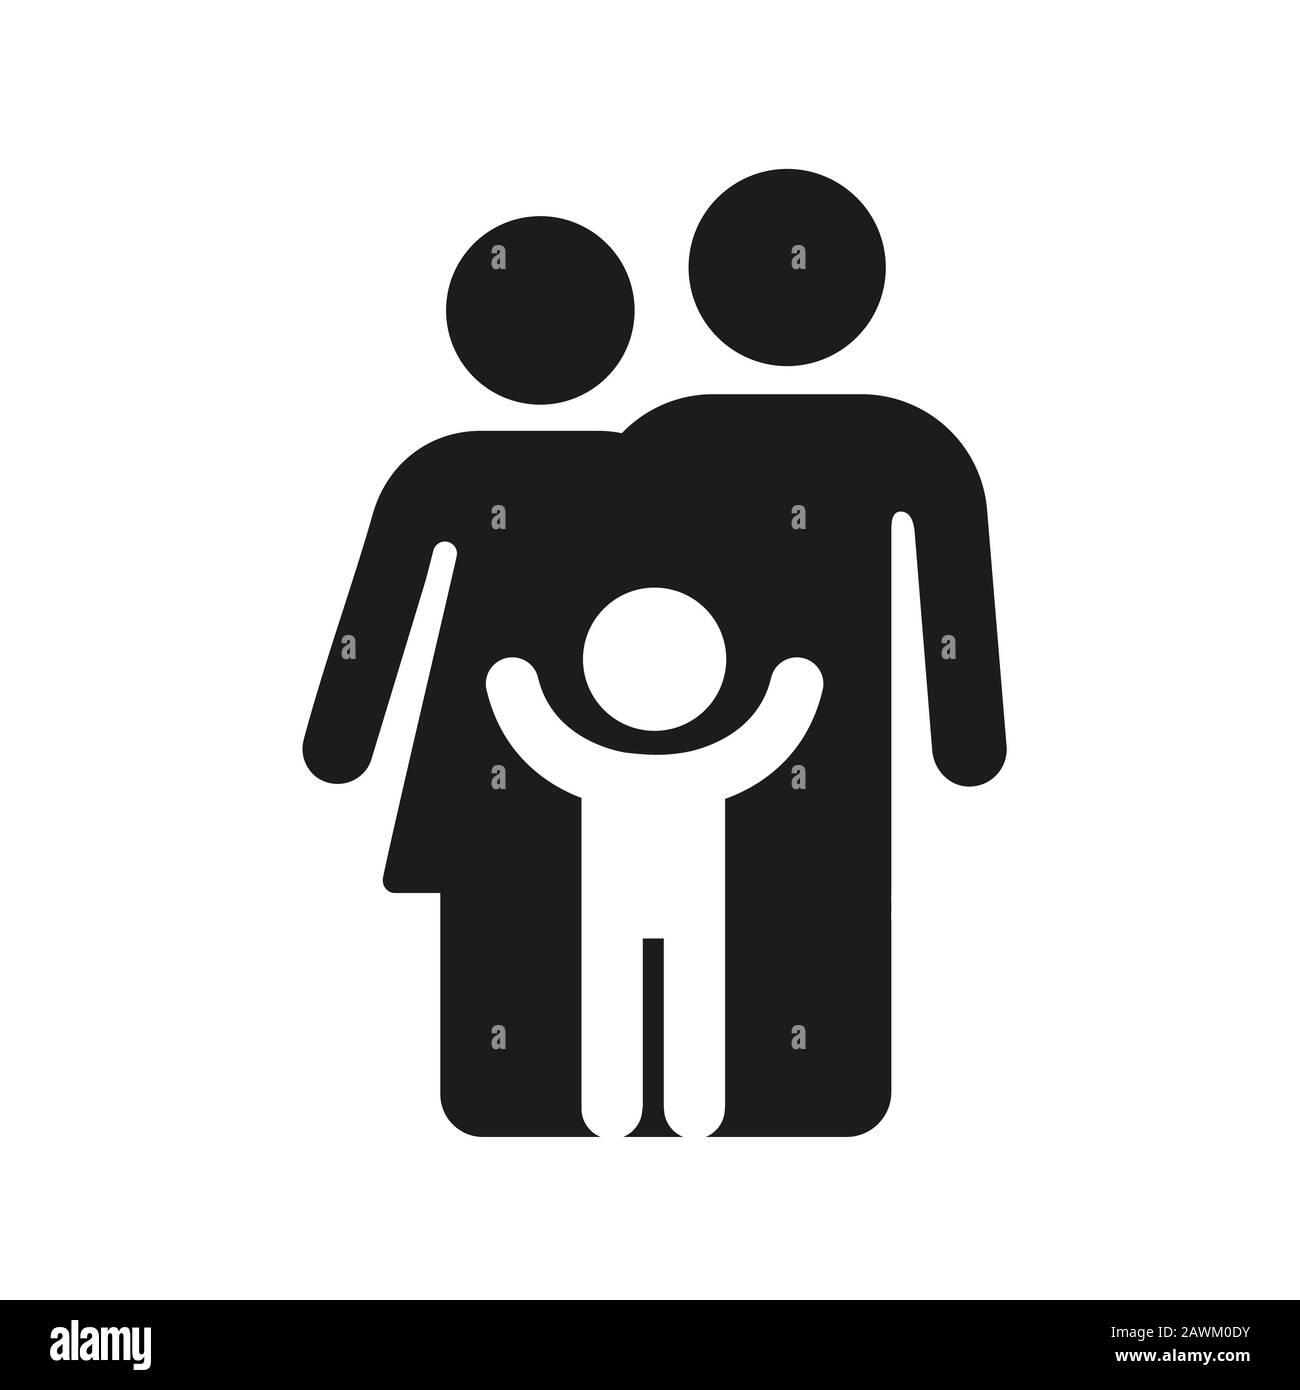 Semplice figura icona famiglia, genitori e bambino. La silhouette del padre, della madre e del capretto. Simbolo o logo geometrico minimo in bianco e nero. Vettore isolato ILL Illustrazione Vettoriale